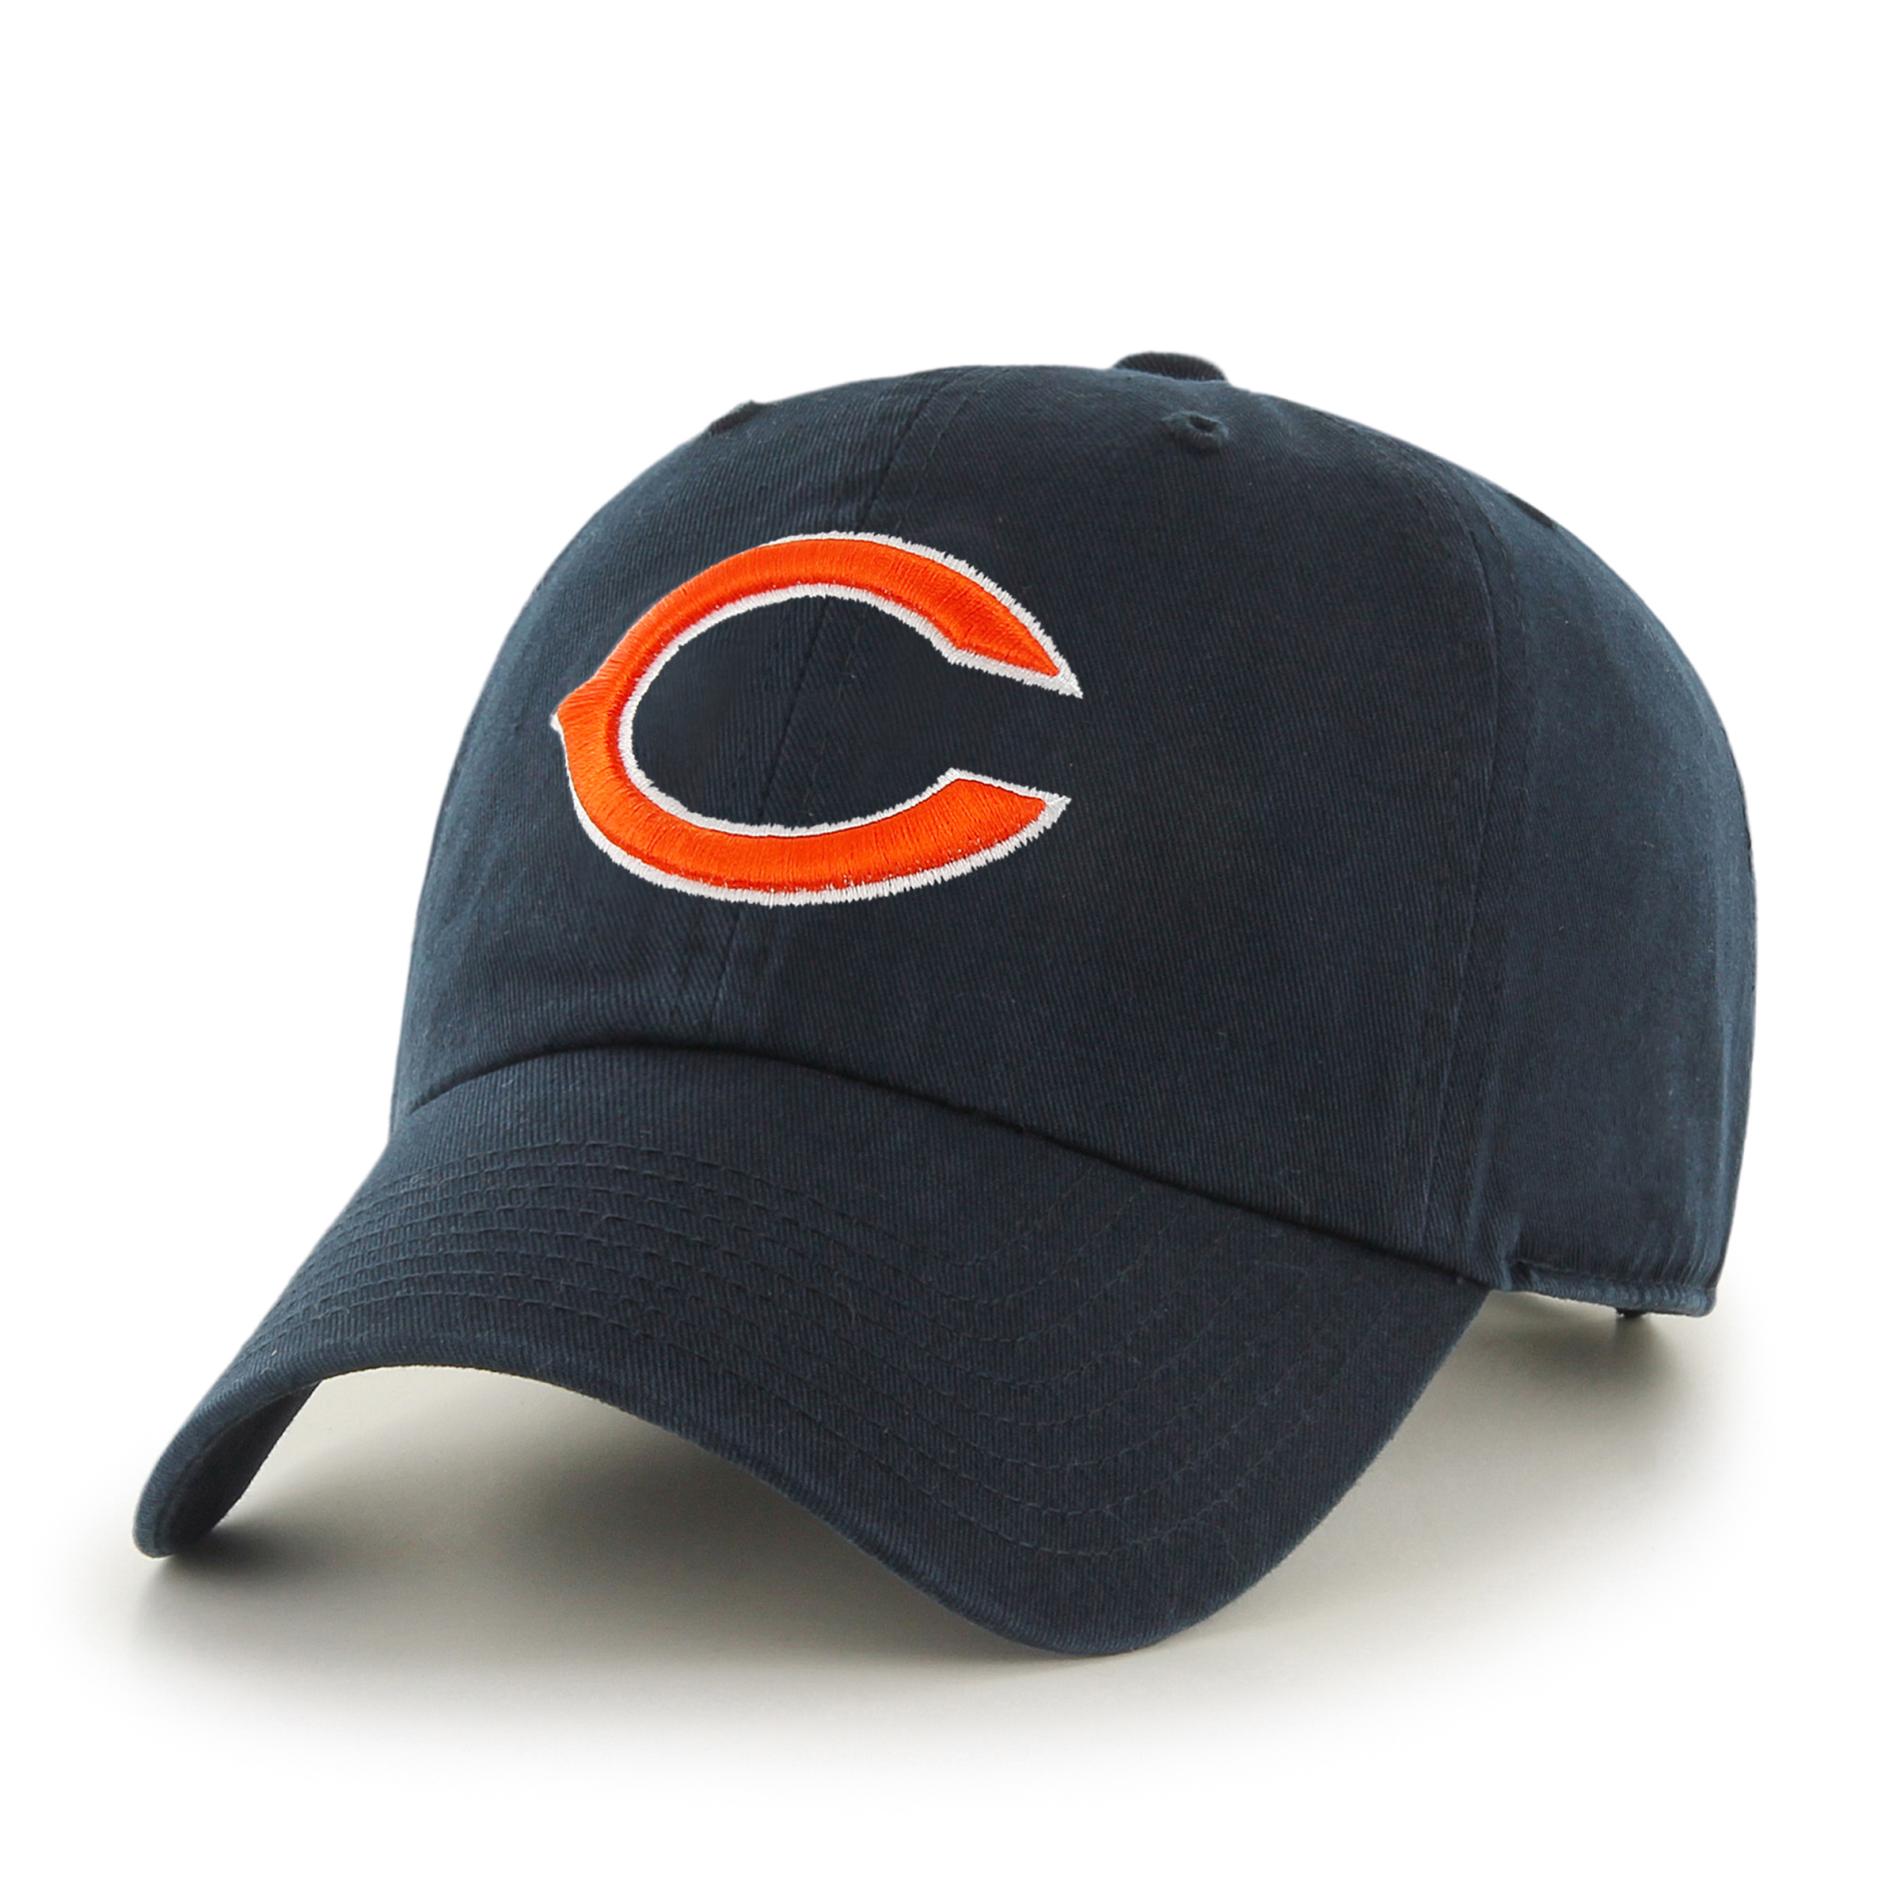 NFL Men's Baseball Hat - Chicago Bears